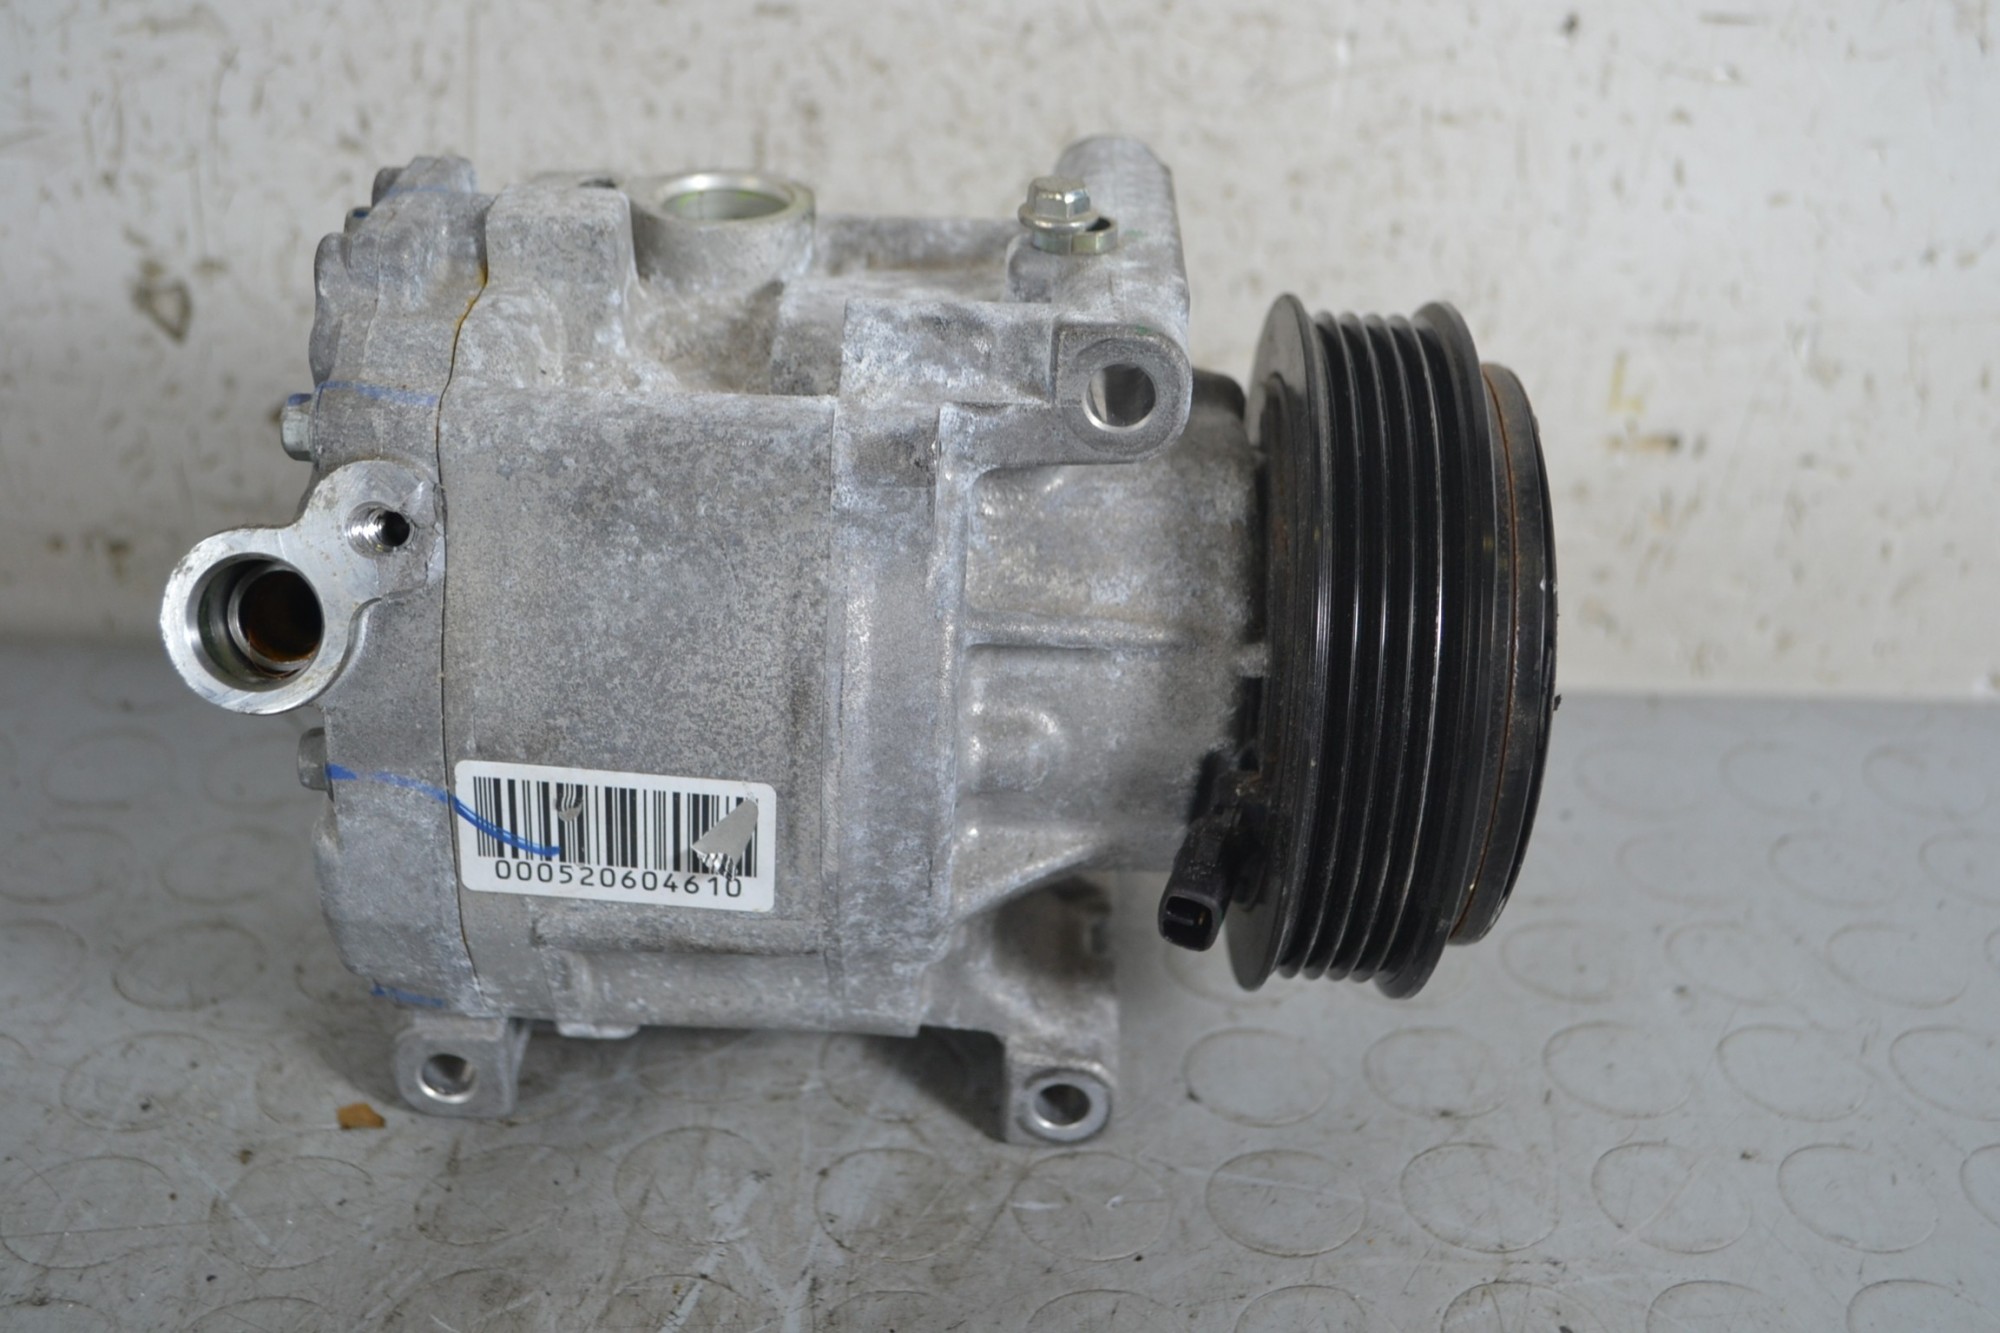 Compressore aria condizionata Fiat Panda 312 Dal 2012 in poi Cod MR447190-1640  1660230562861